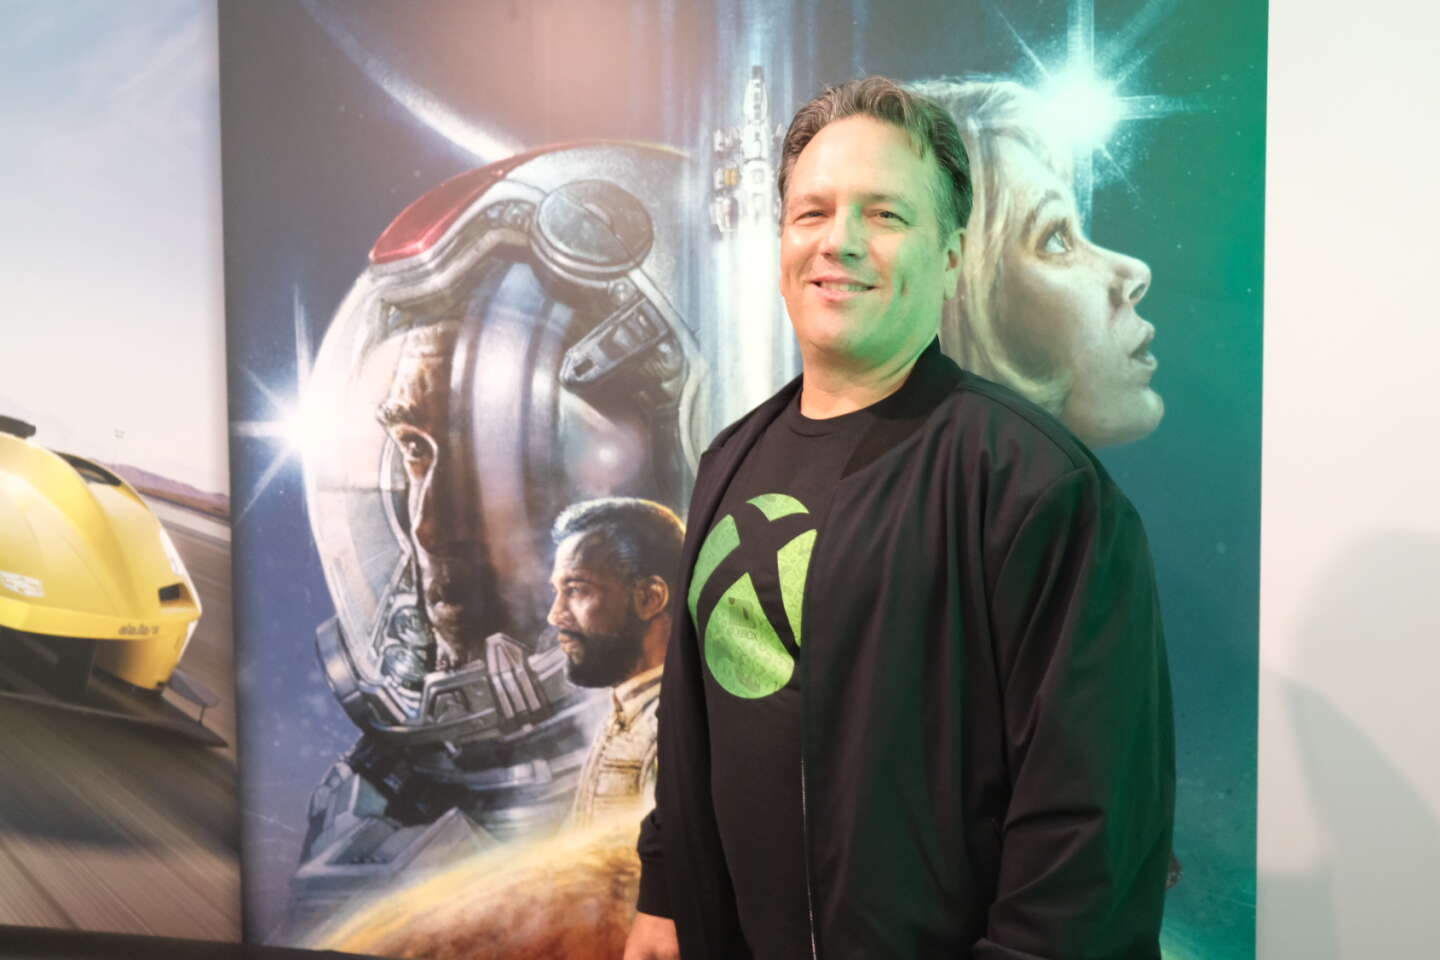 L'origine du Gamertag XboxP3 de Phil Spencer révélée – XboxSquad